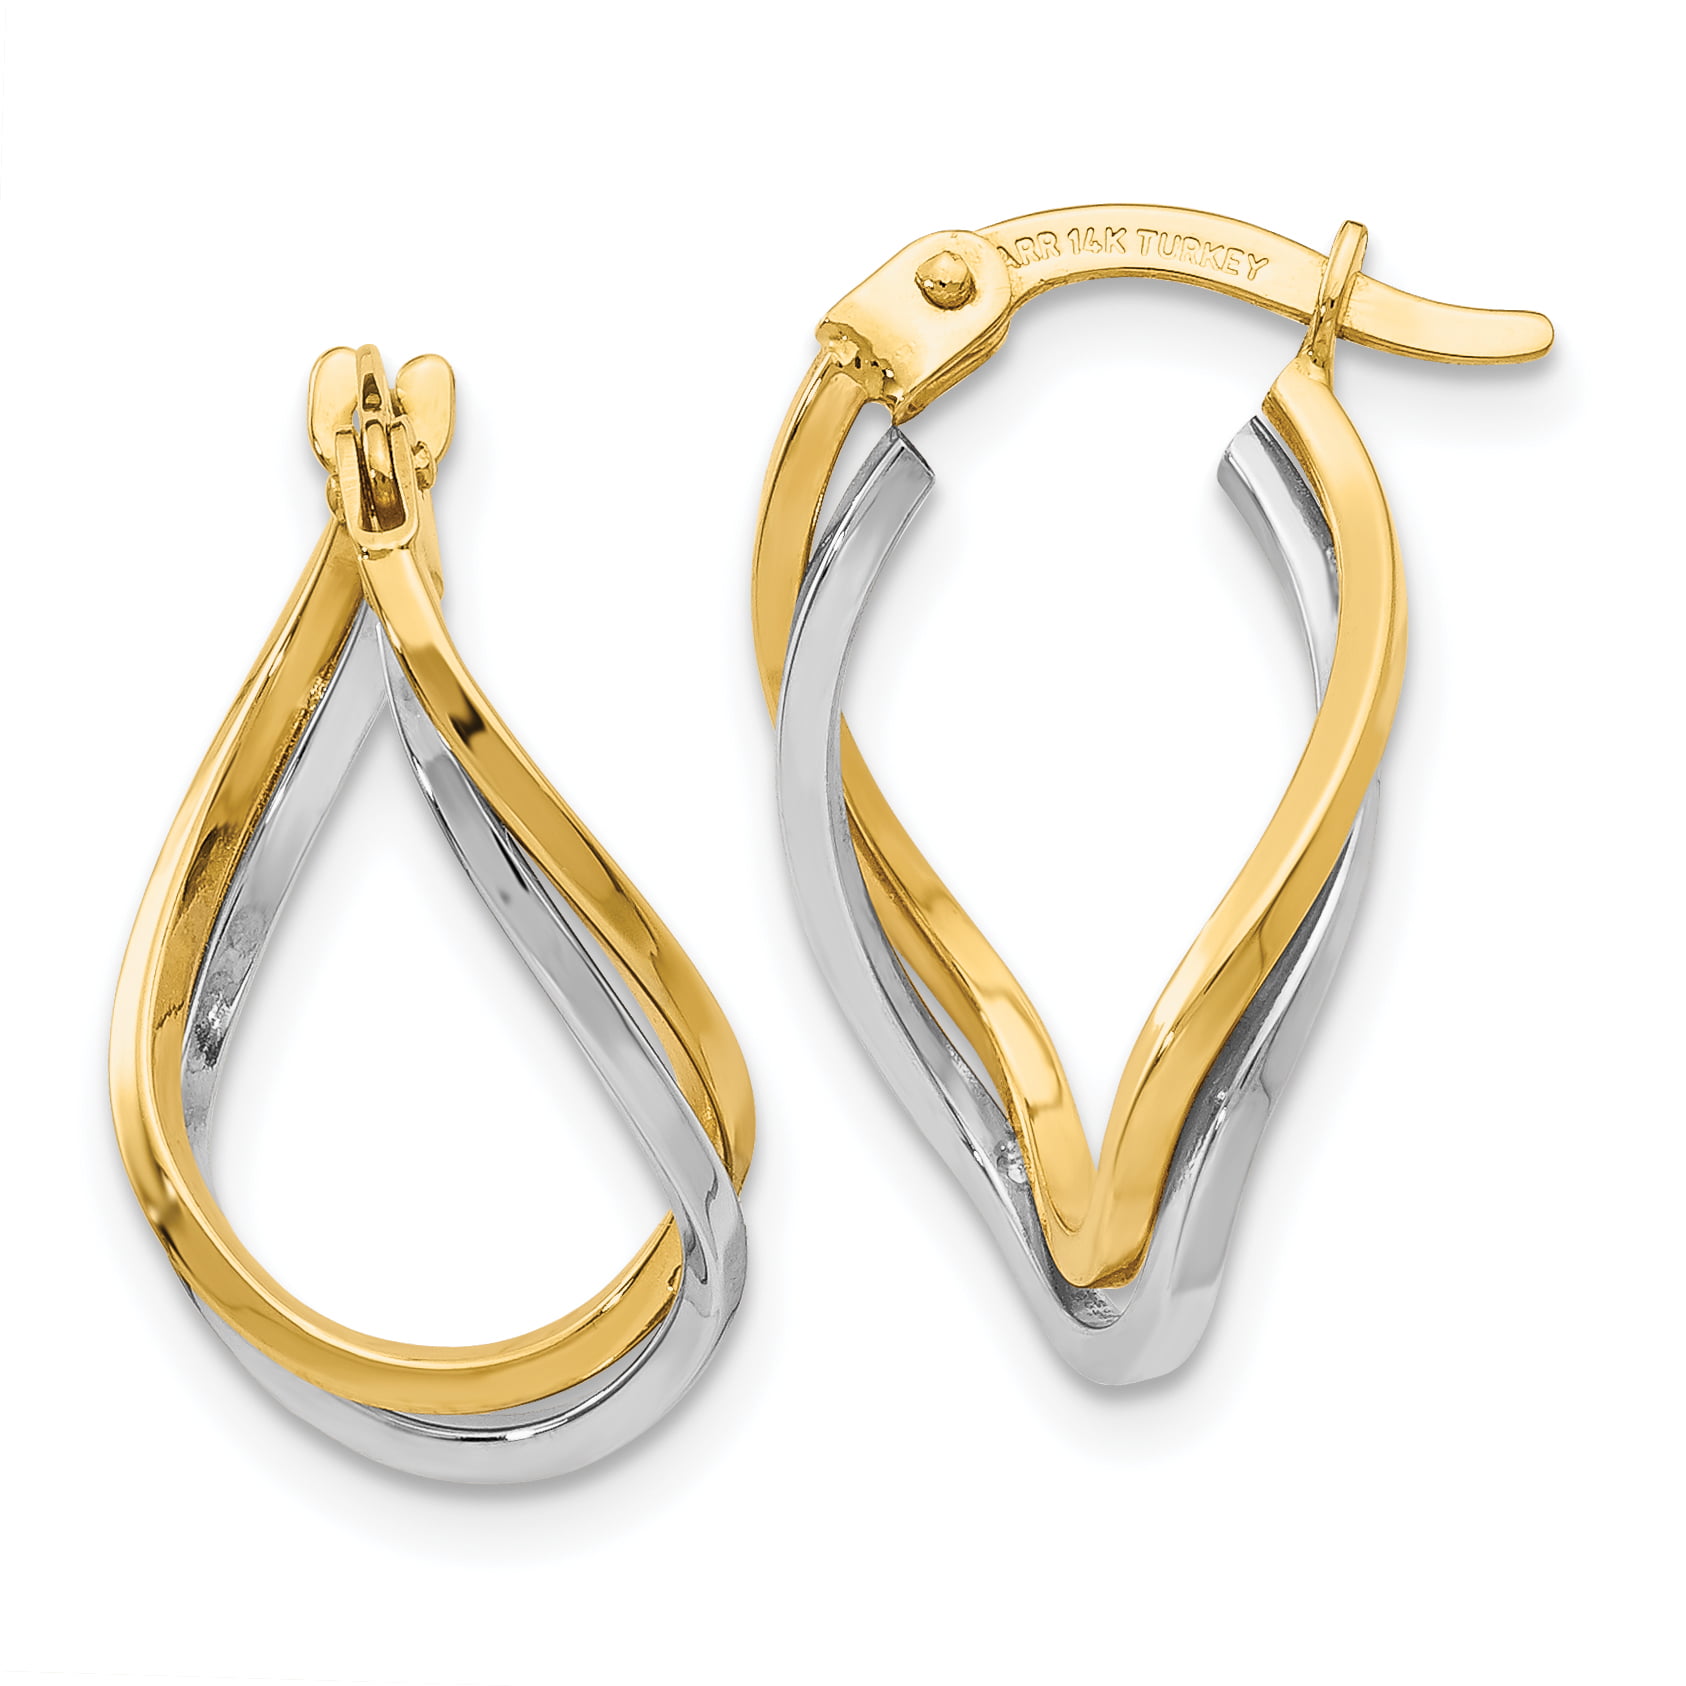 Primal Gold 14 Karat Two-tone Twisted Hoop Earrings - Walmart.com